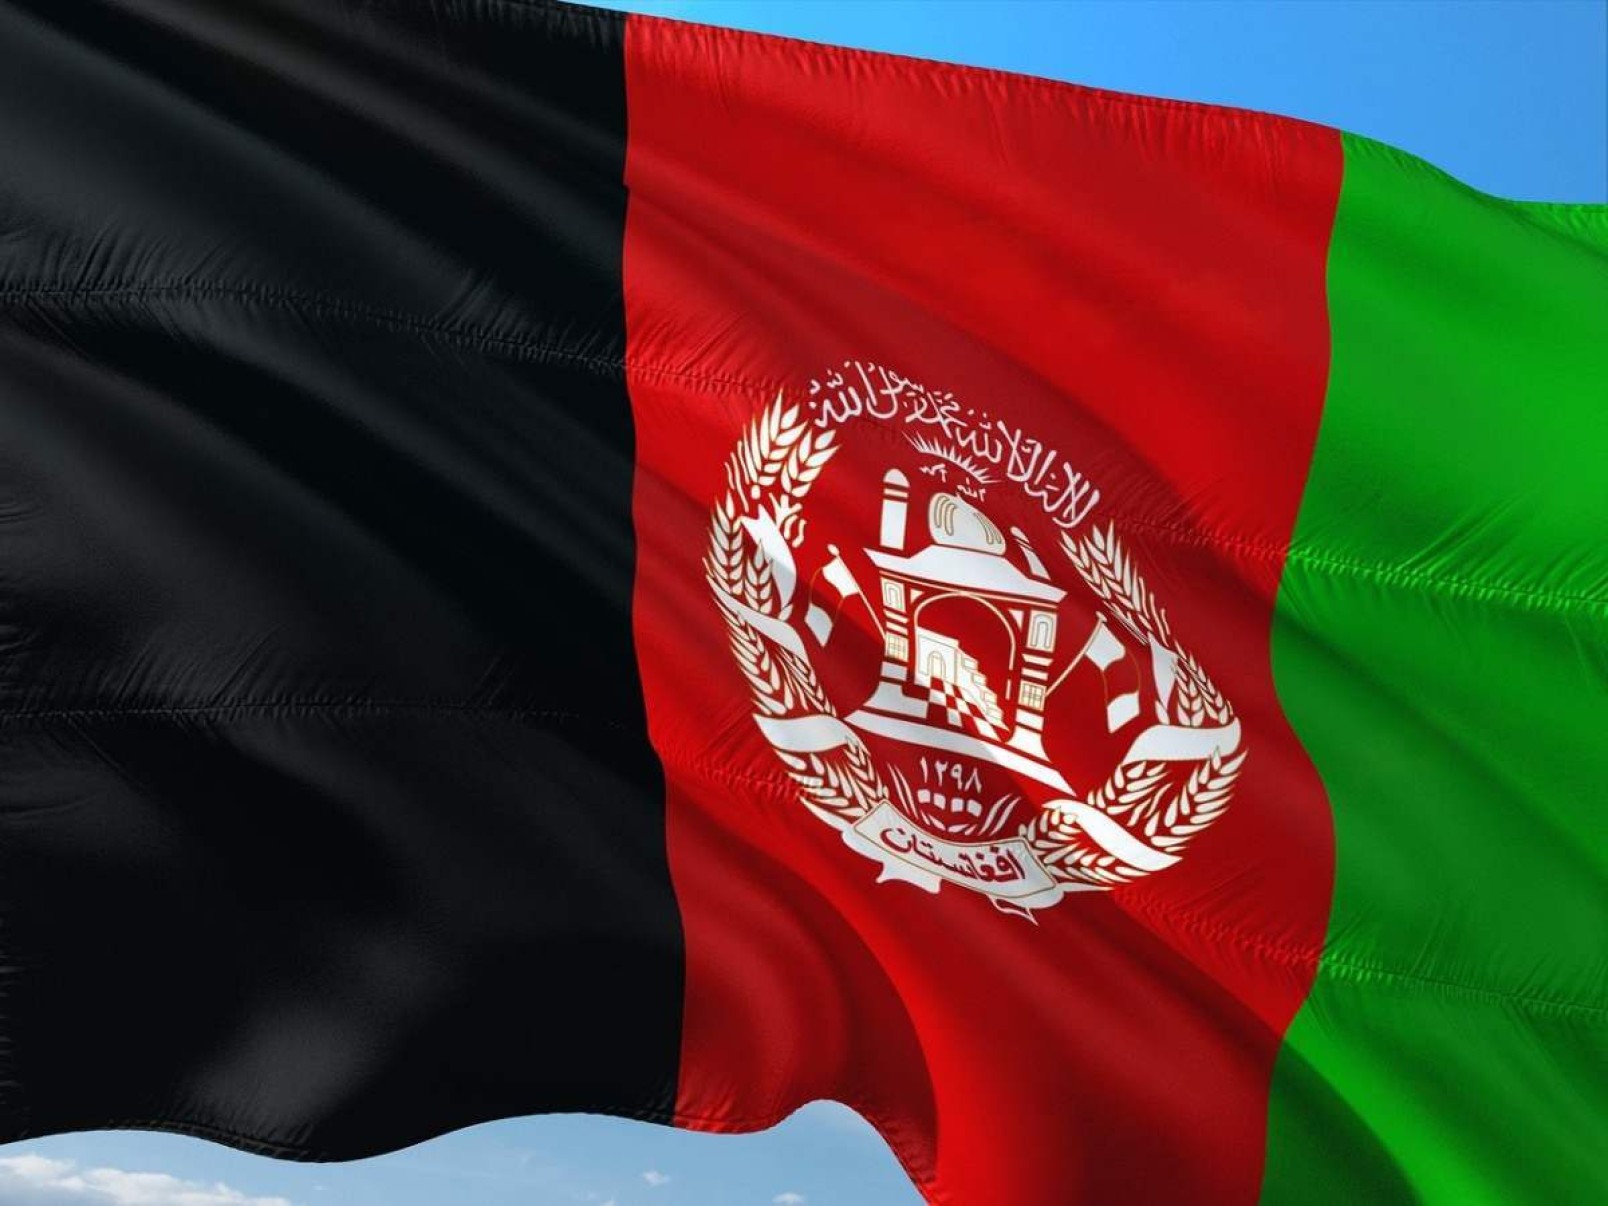 Afeganistão terá delegação igualitária nos Jogos Olímpicos de Paris